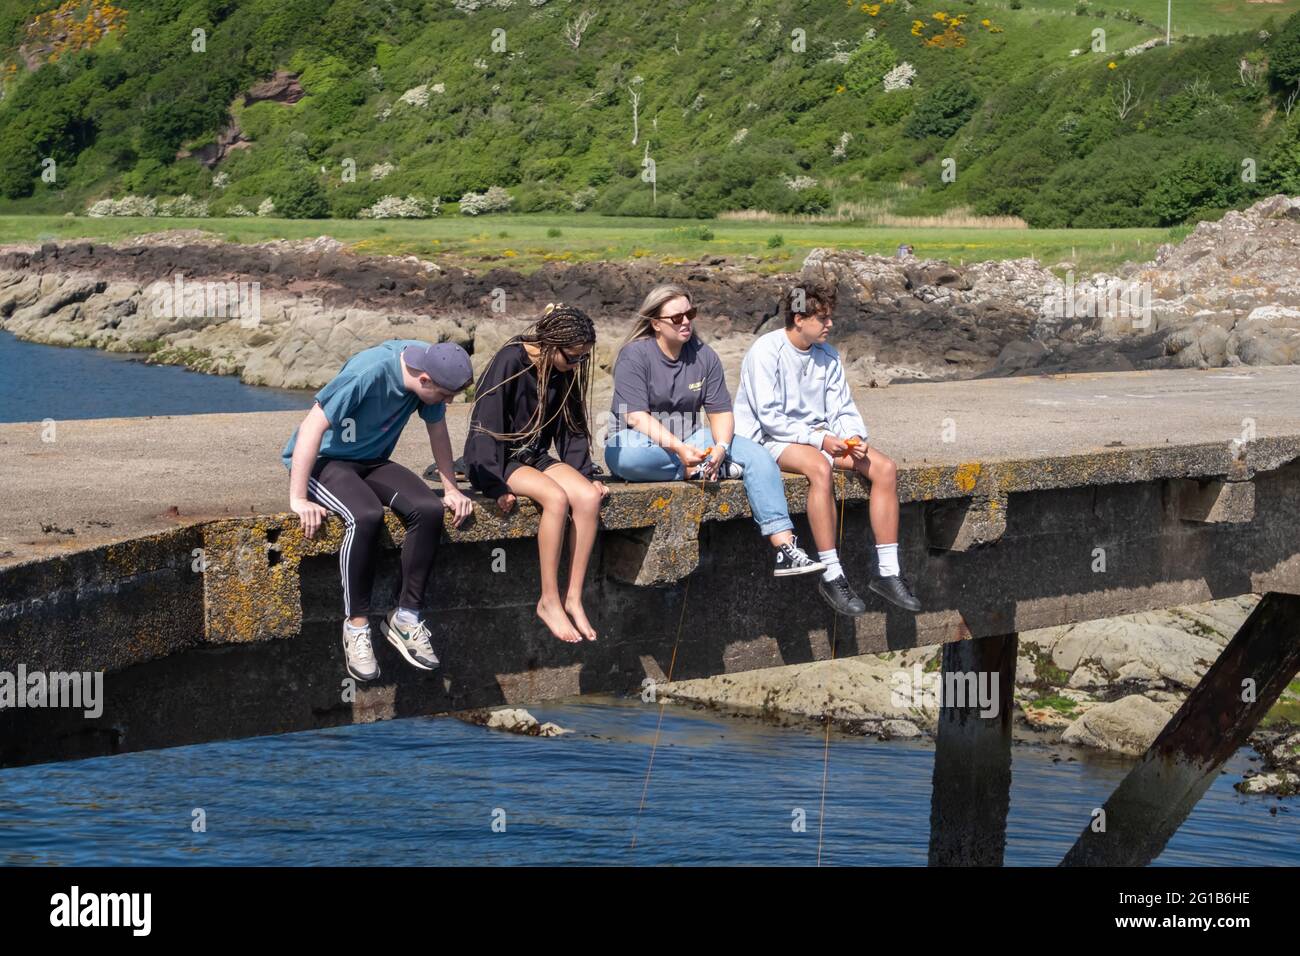 Portencross, Écosse, Royaume-Uni. 6 juin 2021. Météo au Royaume-Uni : assis sur Portencross Pier pêche avec des lignes et des filets. Credit: SKULLY/Alay Live News Banque D'Images